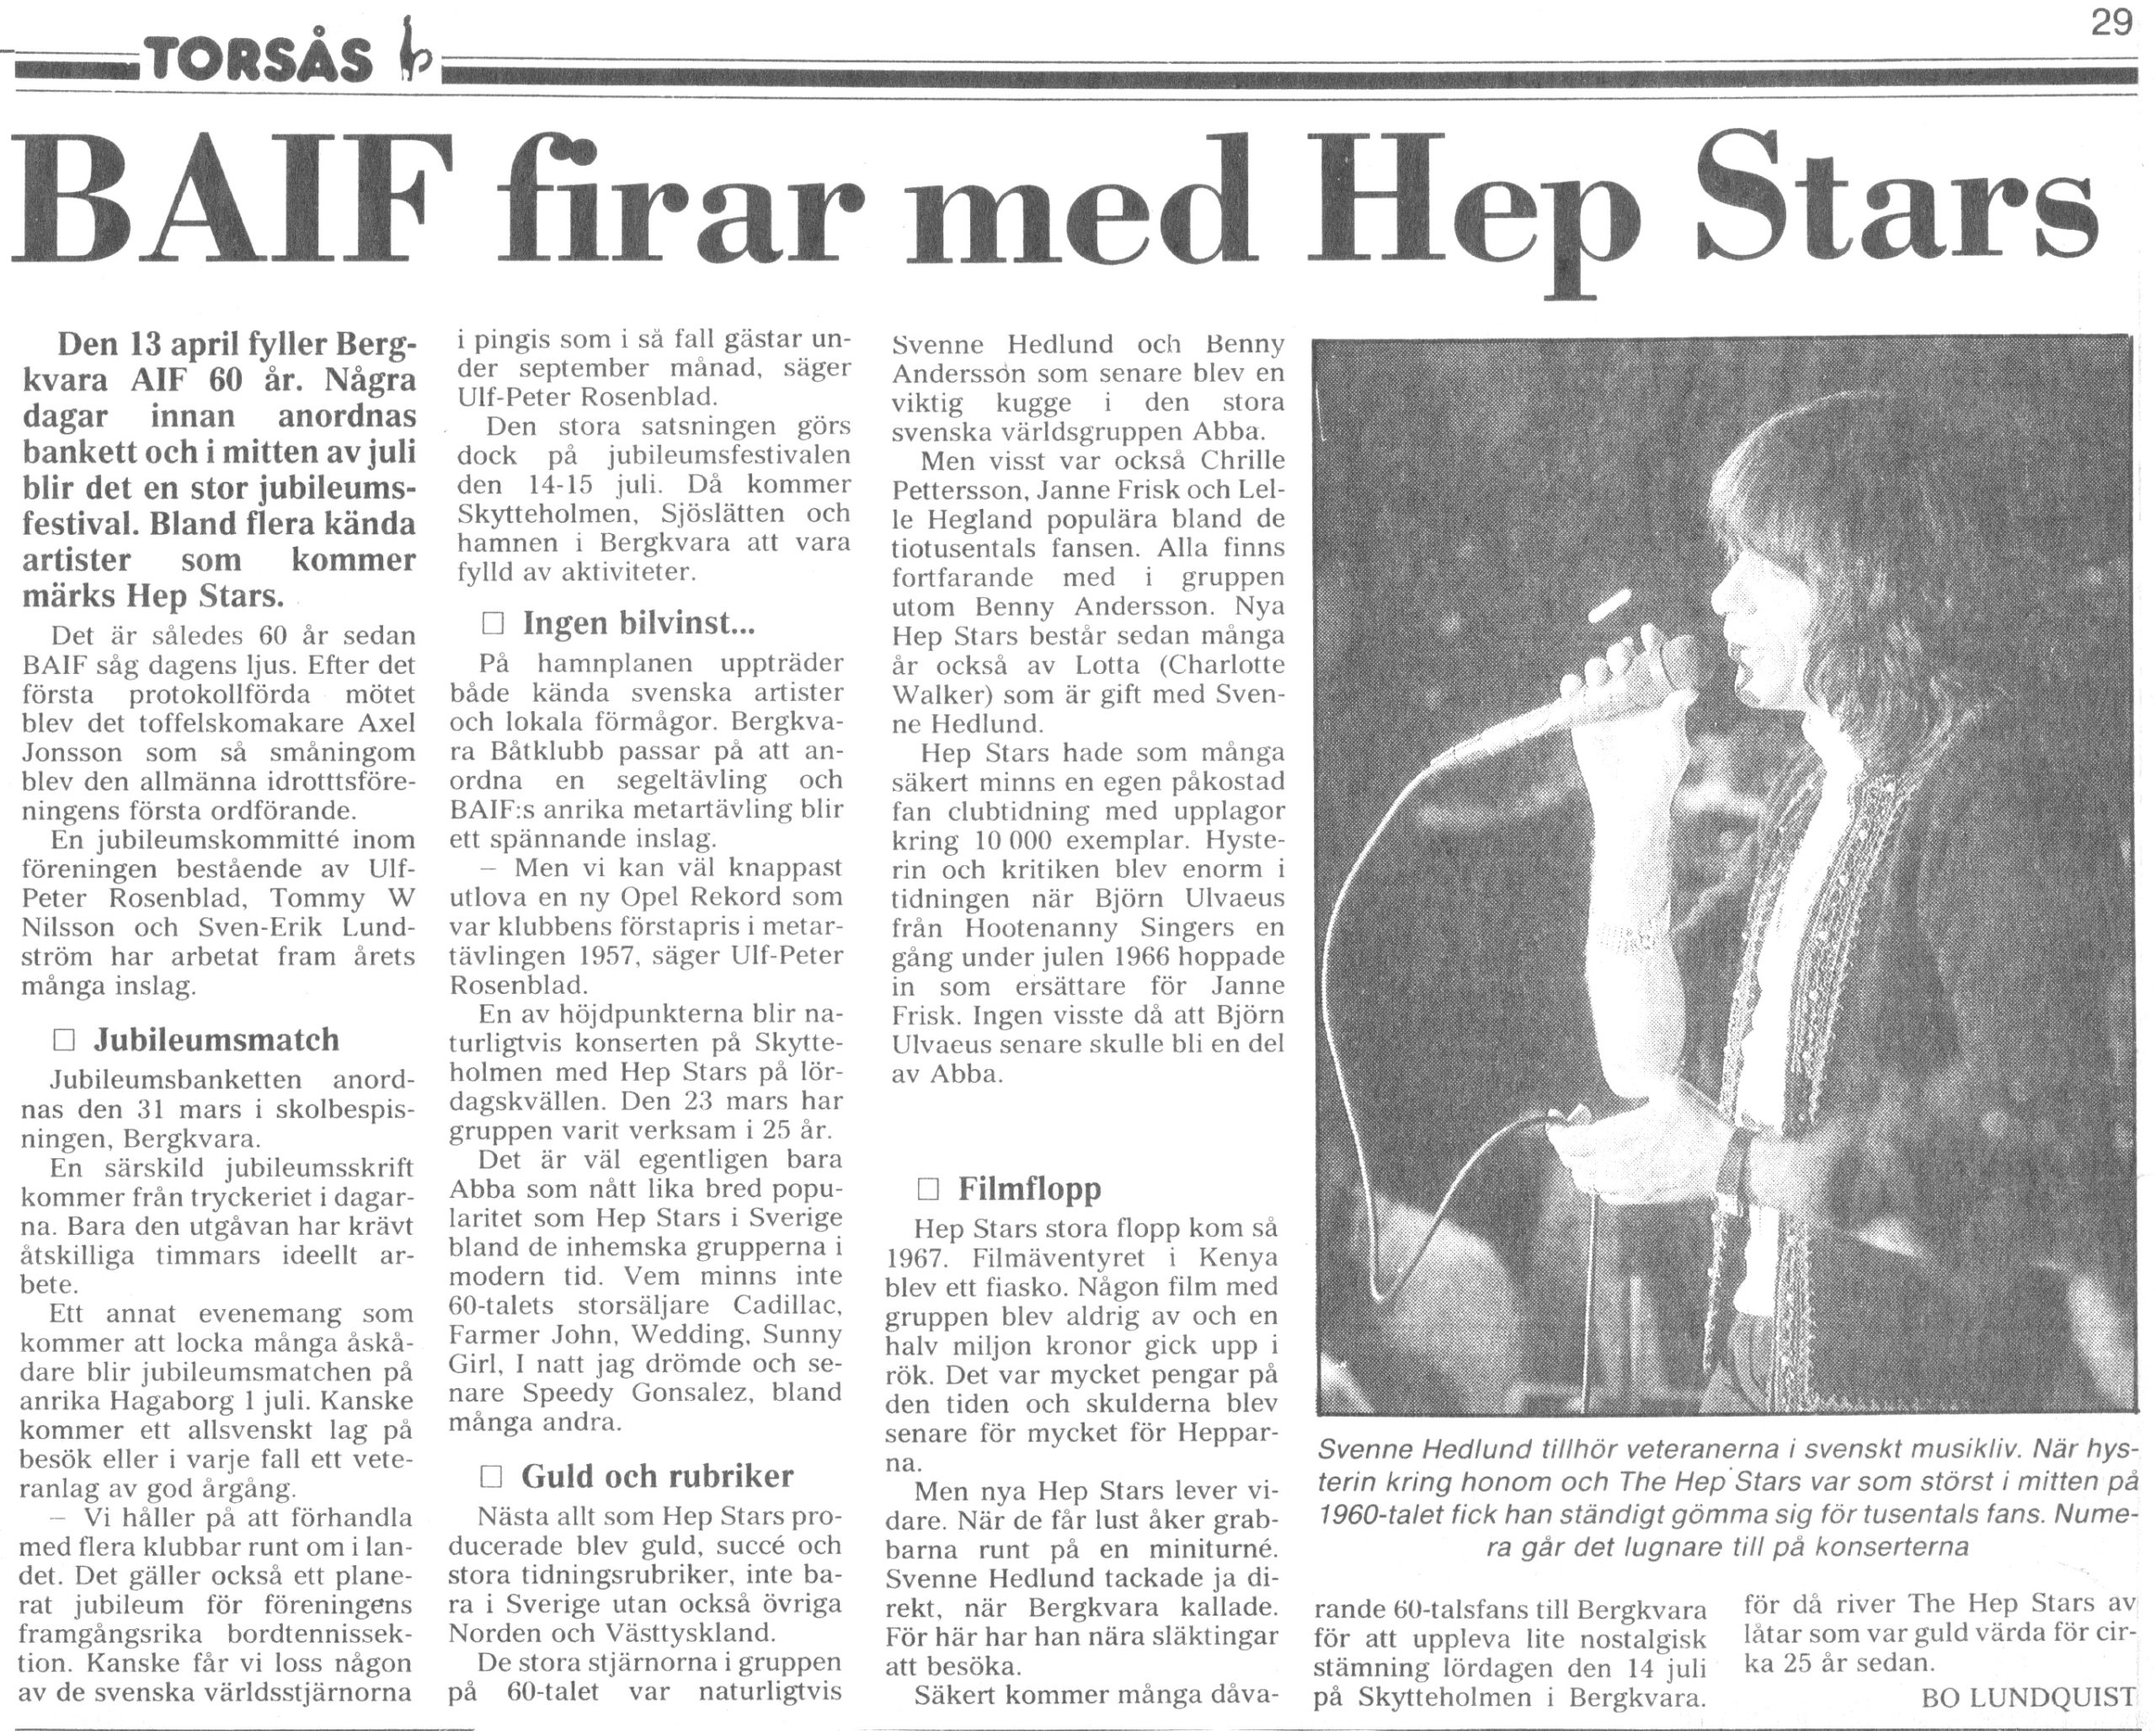 Artikel - BAIF firar med Hep Stars, 1990